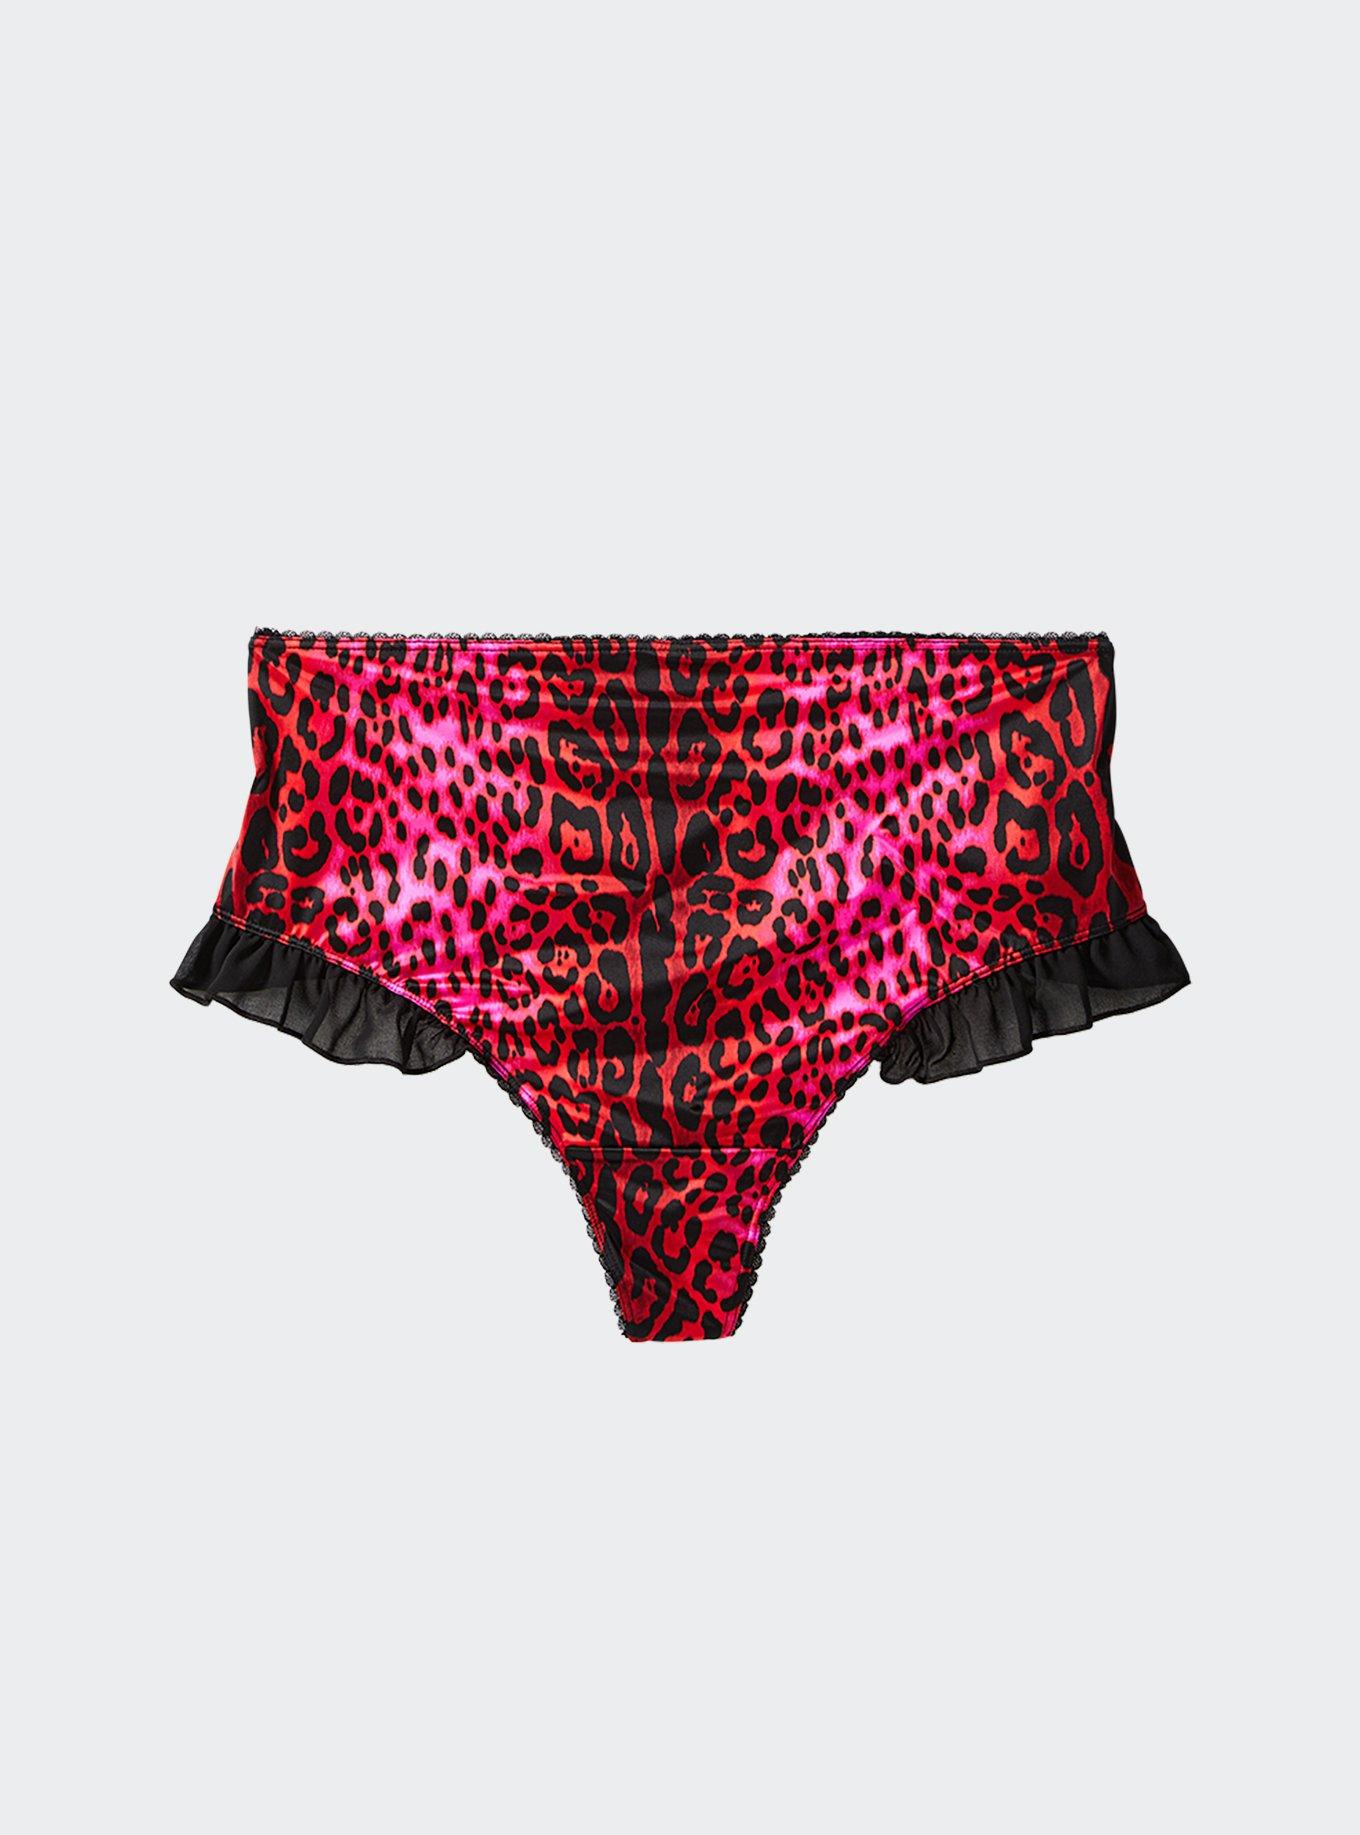 Blush Lingerie Pretty Little Panties - Leopard on Sale